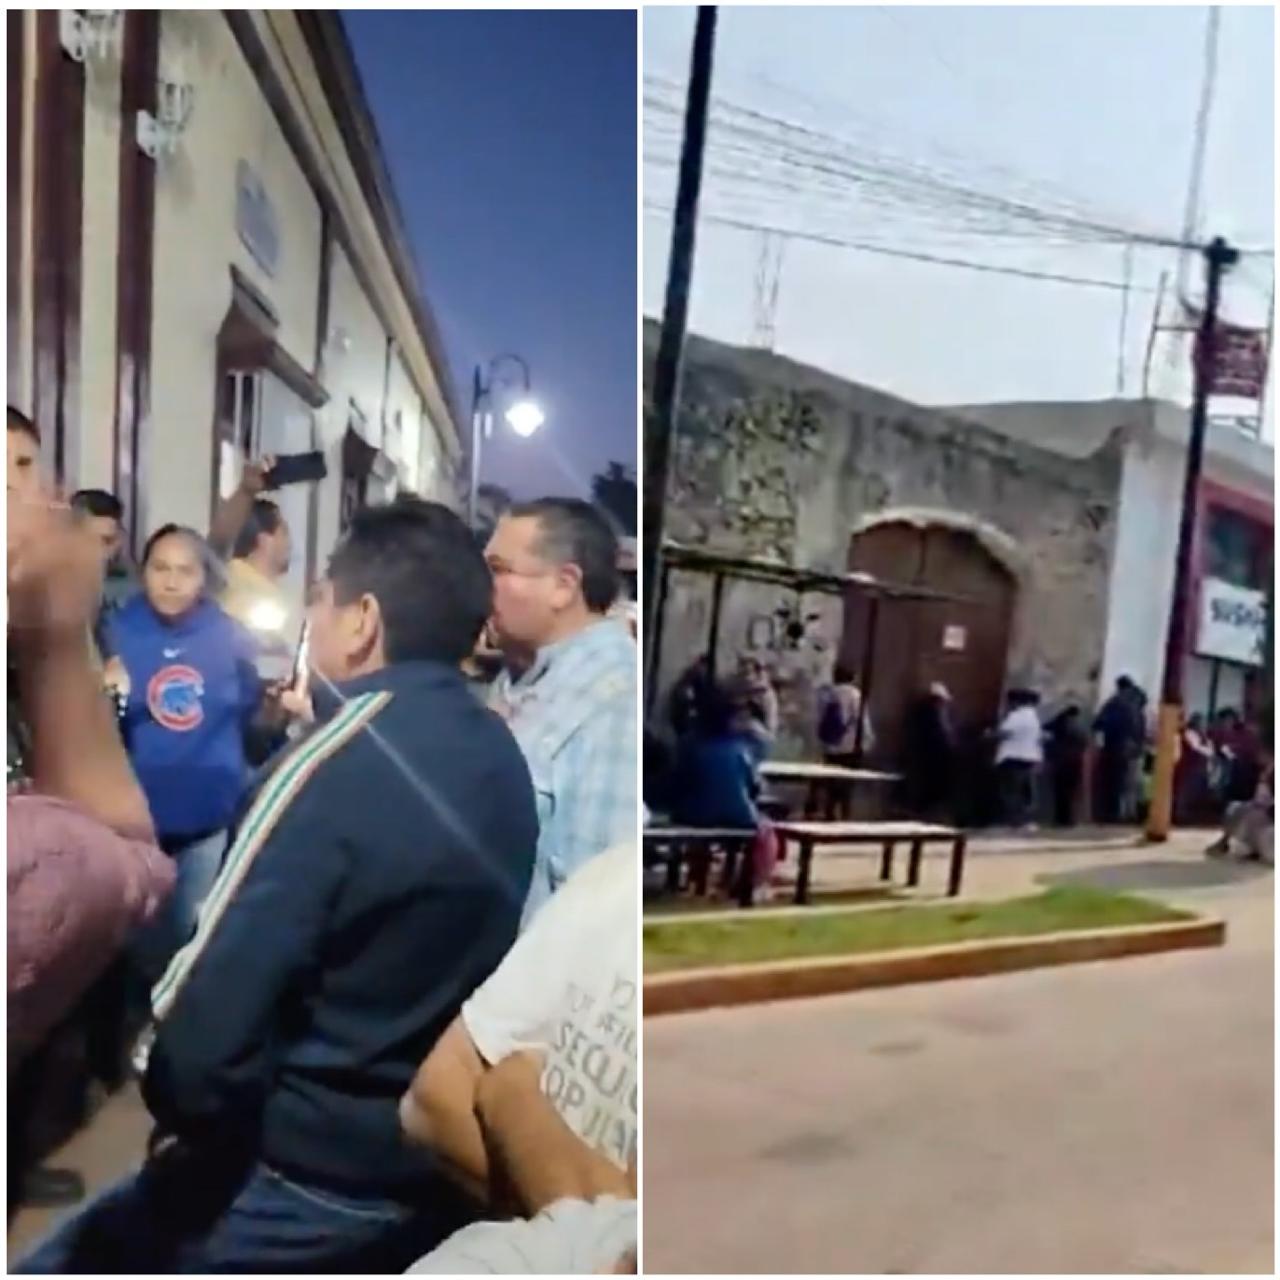 Queman patrulla en Ciudad Serdán y termina golpeado candidato del PAN